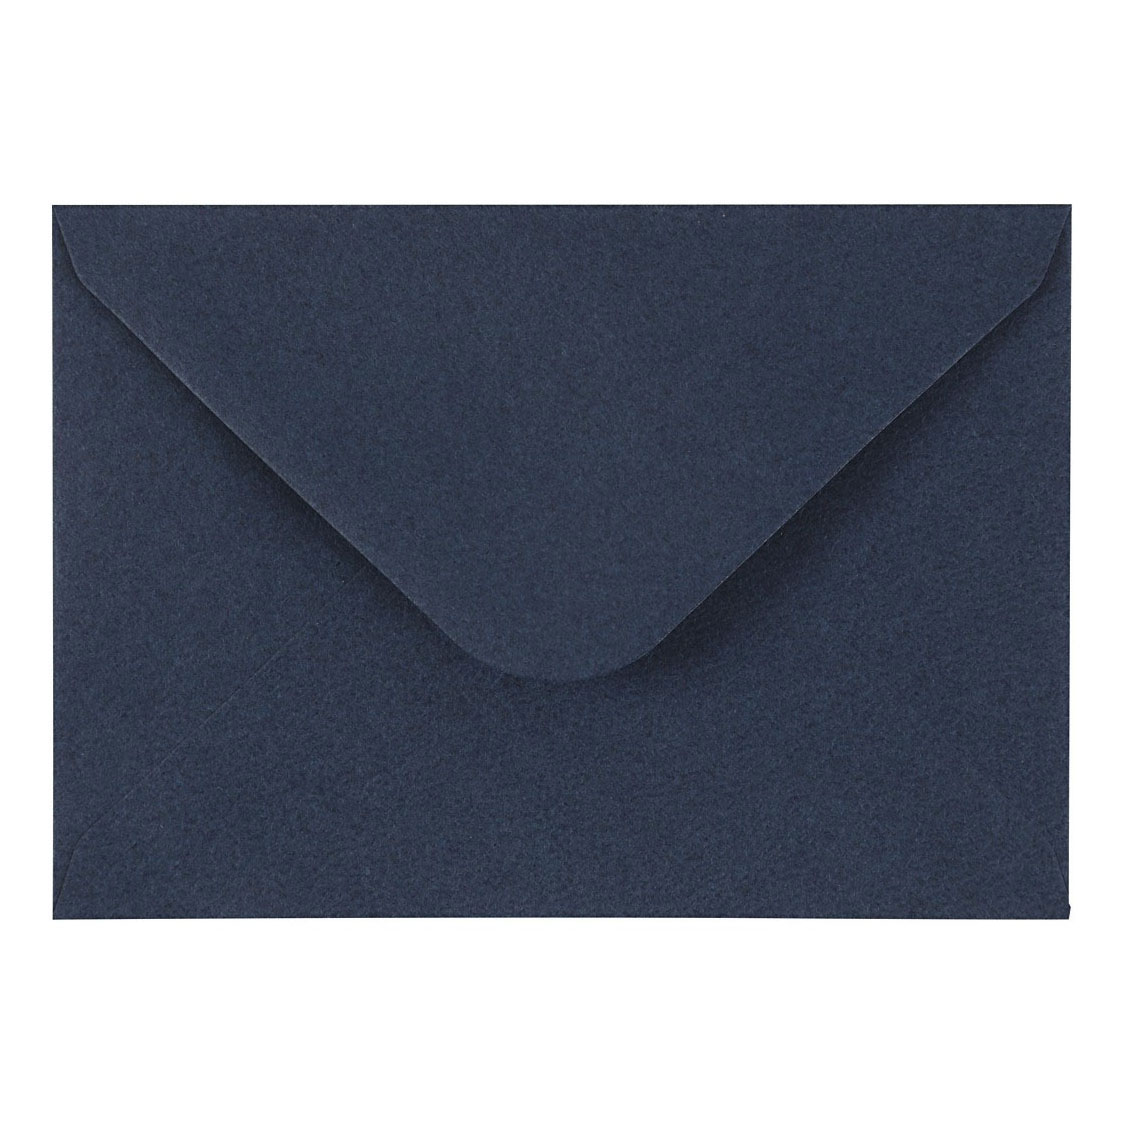 Enveloppe Bleu, 11,5x15cm, 10 pcs.